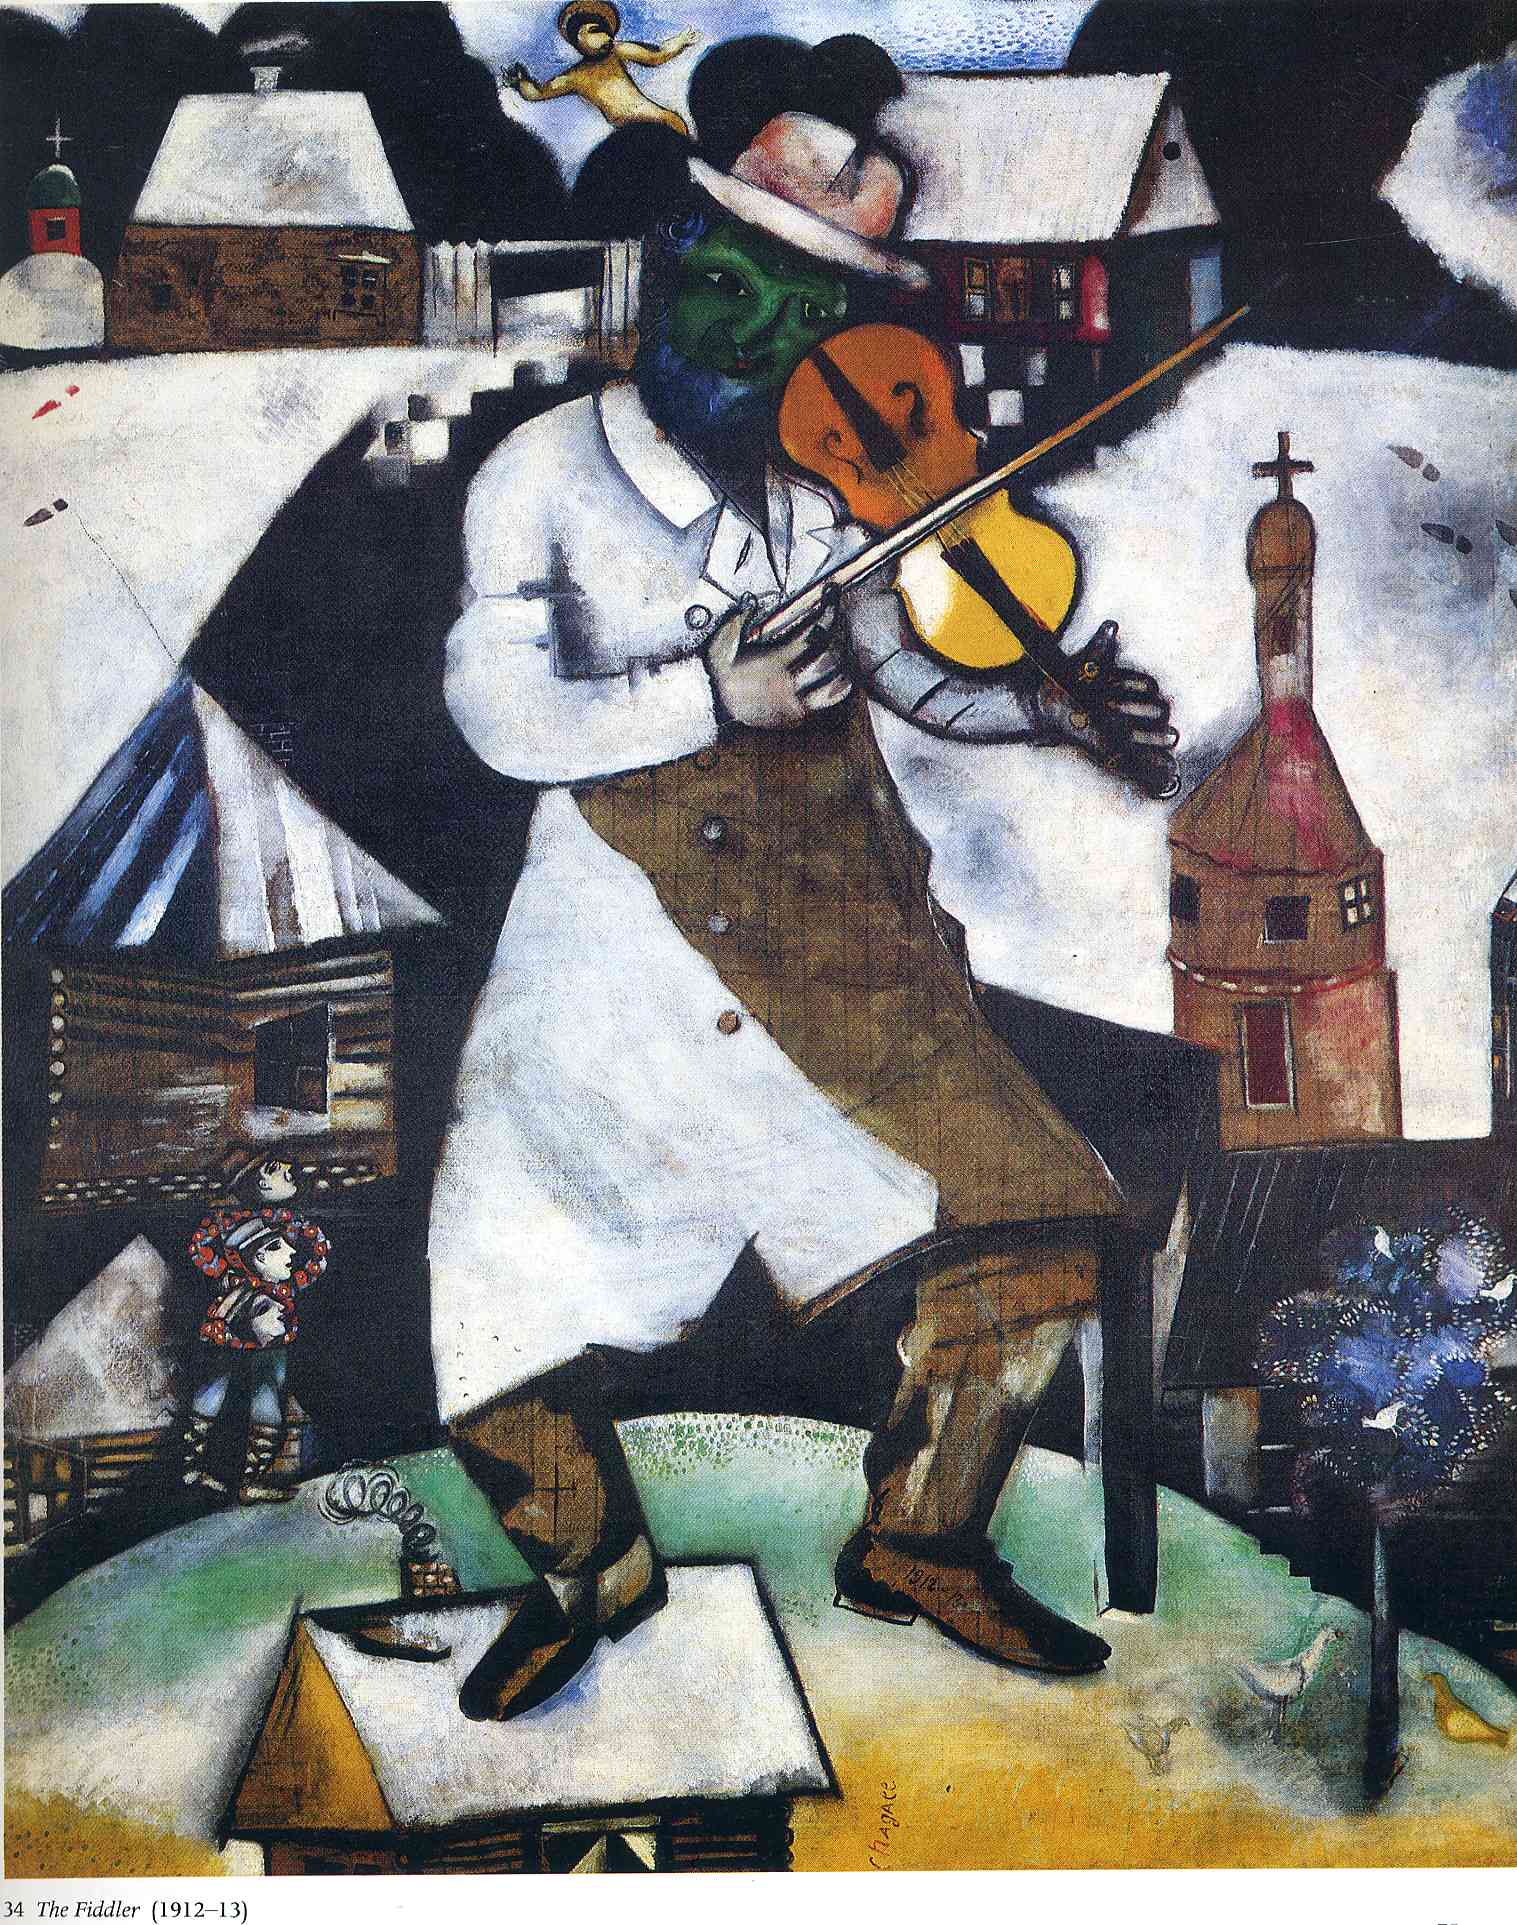 The Fiddler (1913).